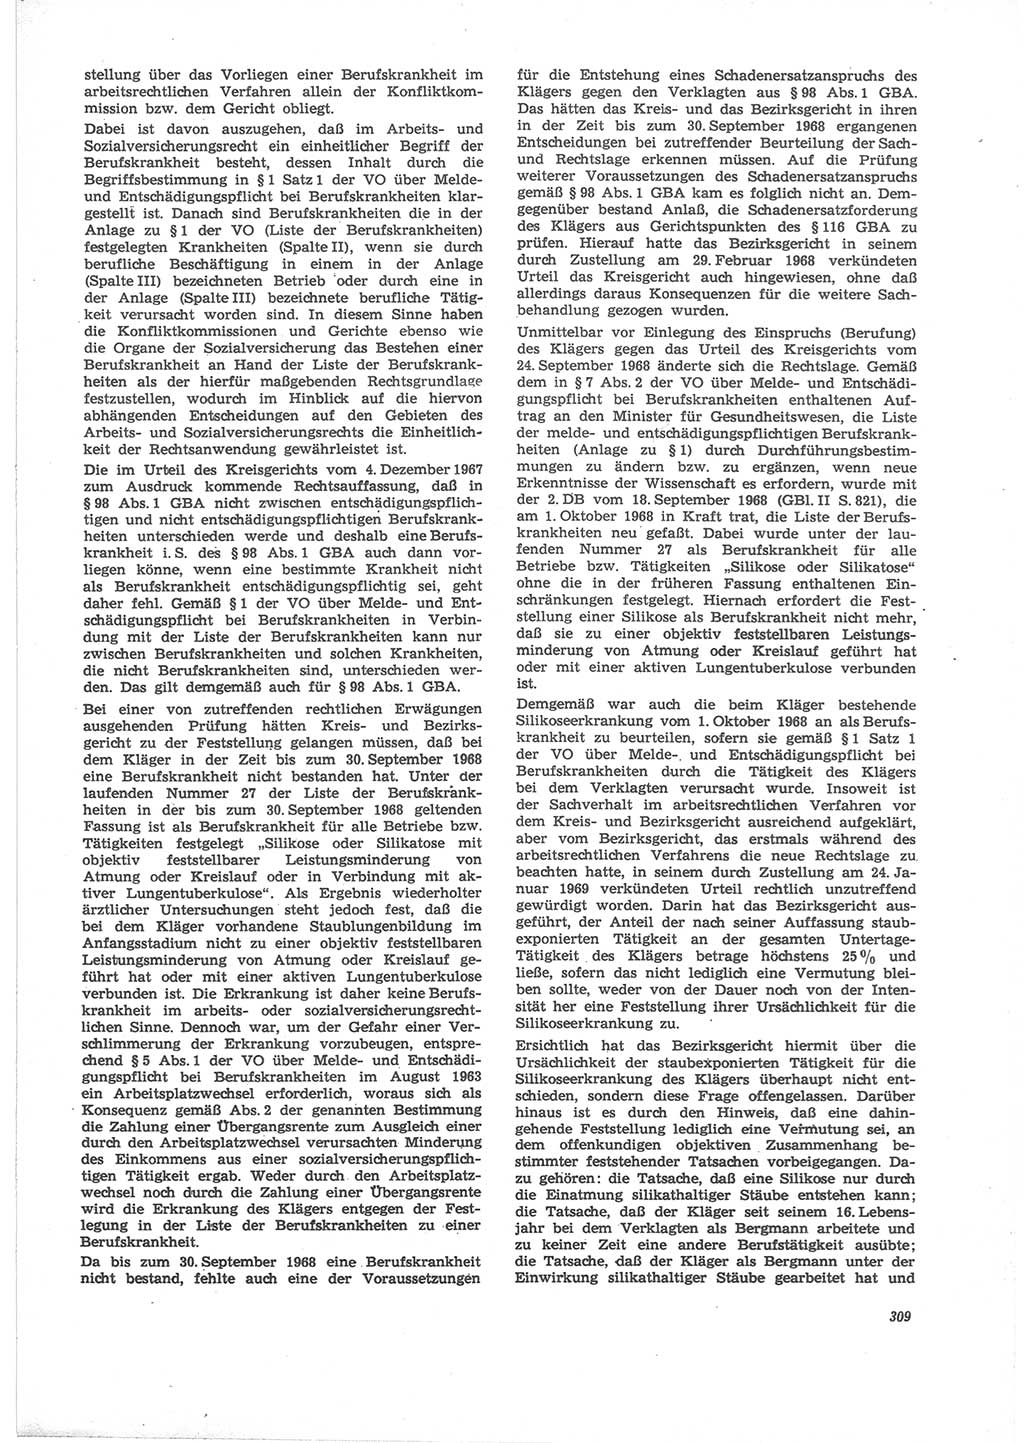 Neue Justiz (NJ), Zeitschrift für Recht und Rechtswissenschaft [Deutsche Demokratische Republik (DDR)], 24. Jahrgang 1970, Seite 309 (NJ DDR 1970, S. 309)